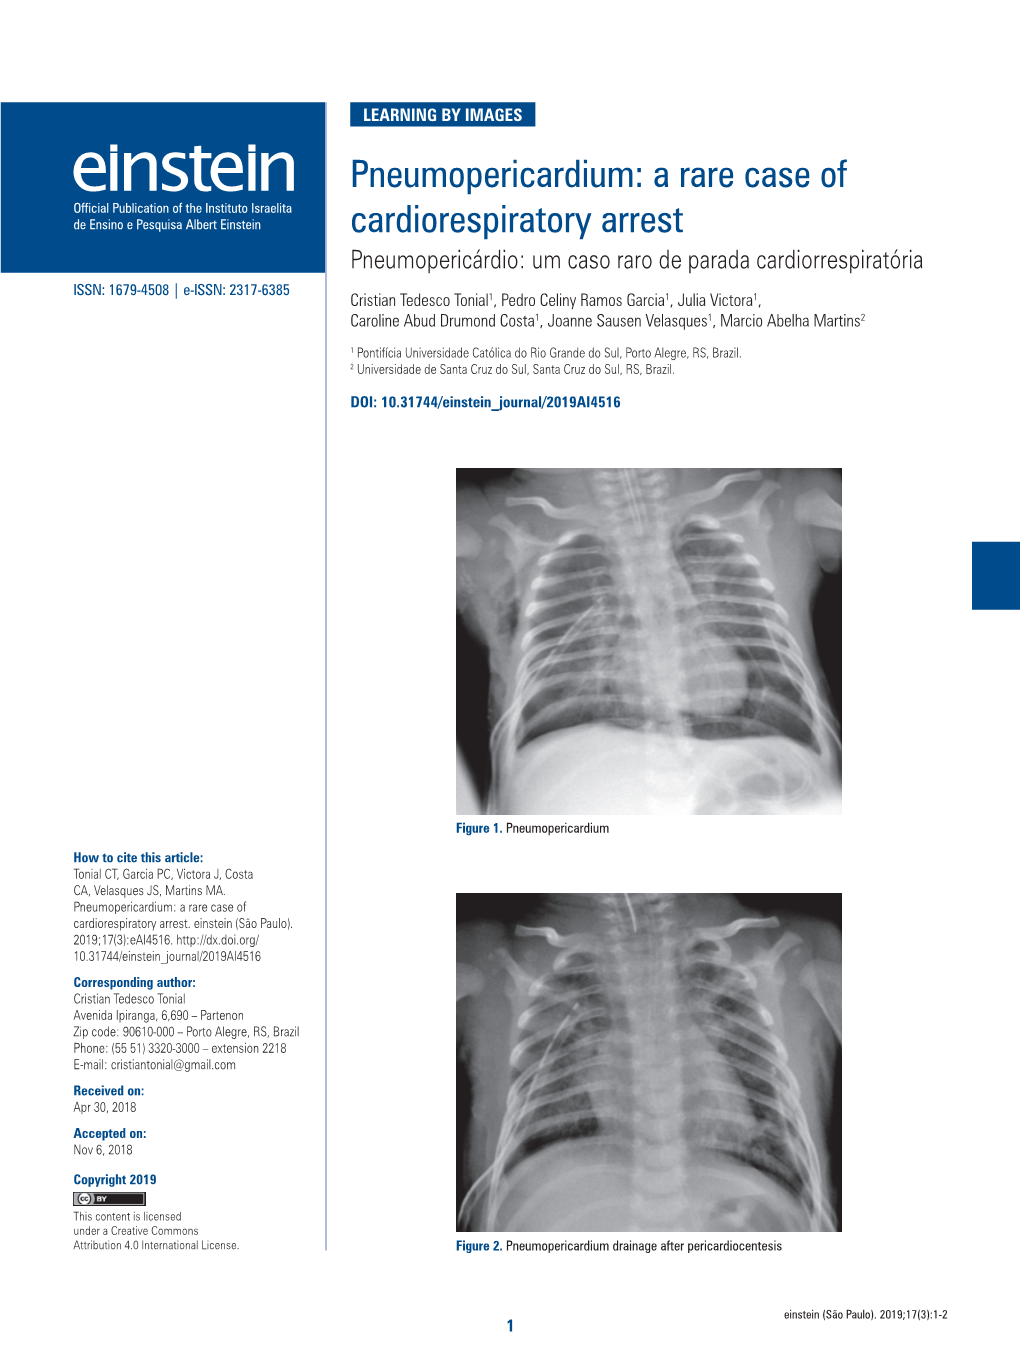 Pneumopericardium: a Rare Case of Cardiorespiratory Arrest